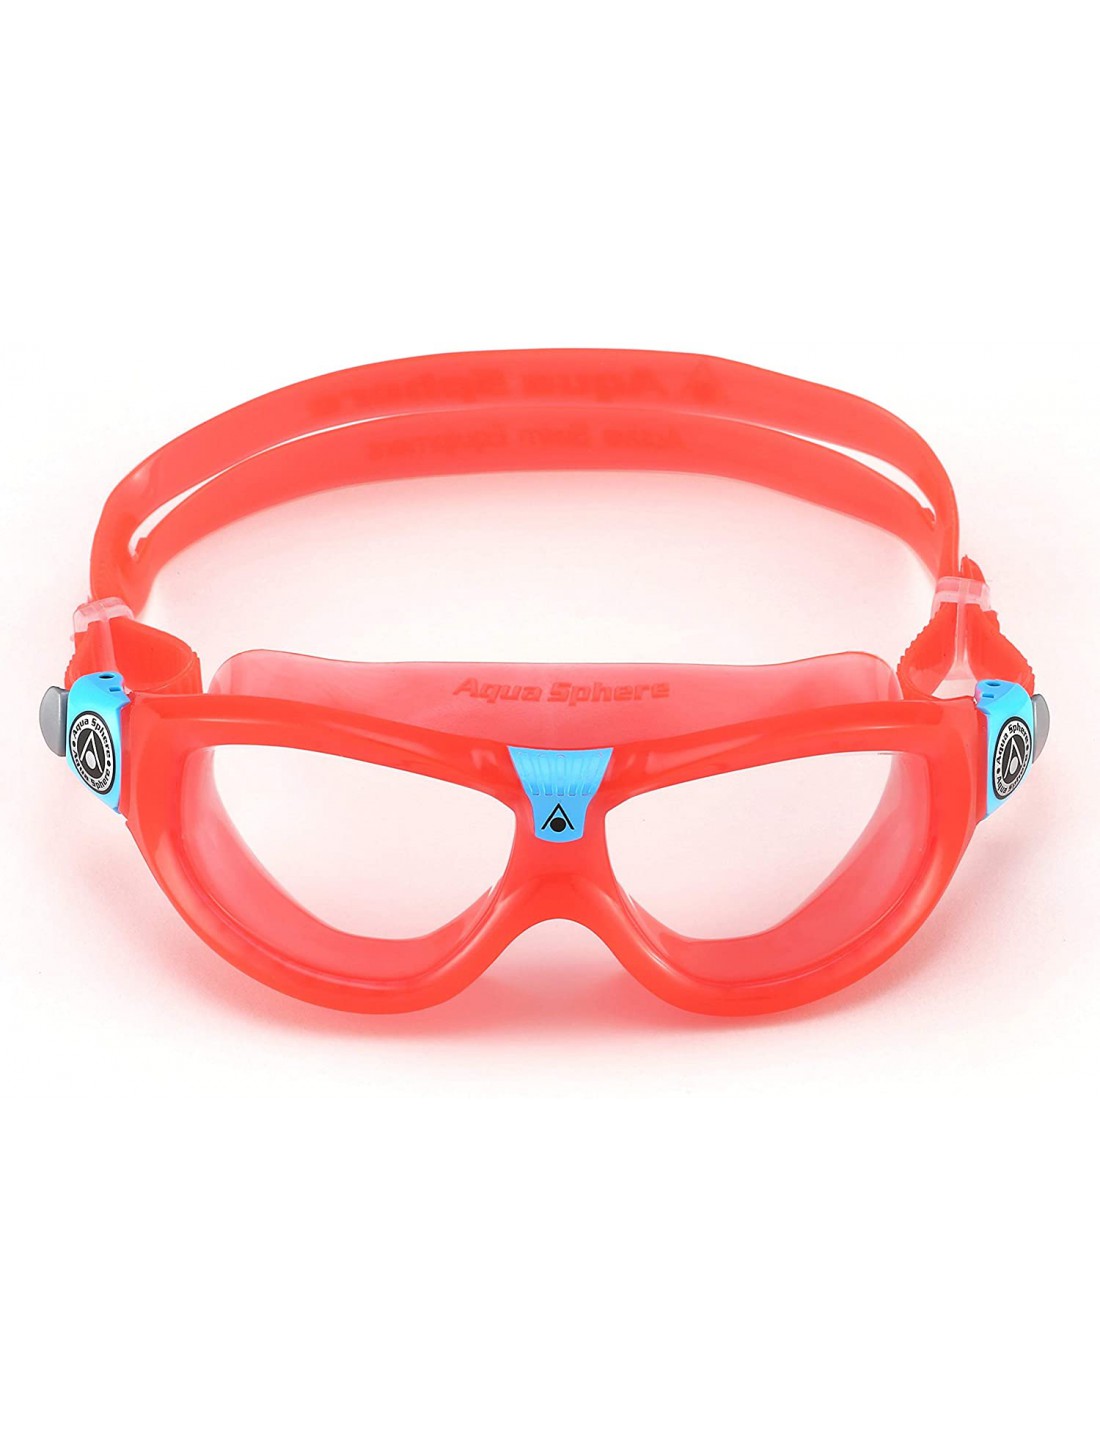 Gafas de natación Seal Kid 2 Red (Fluor). Aqua Sphere